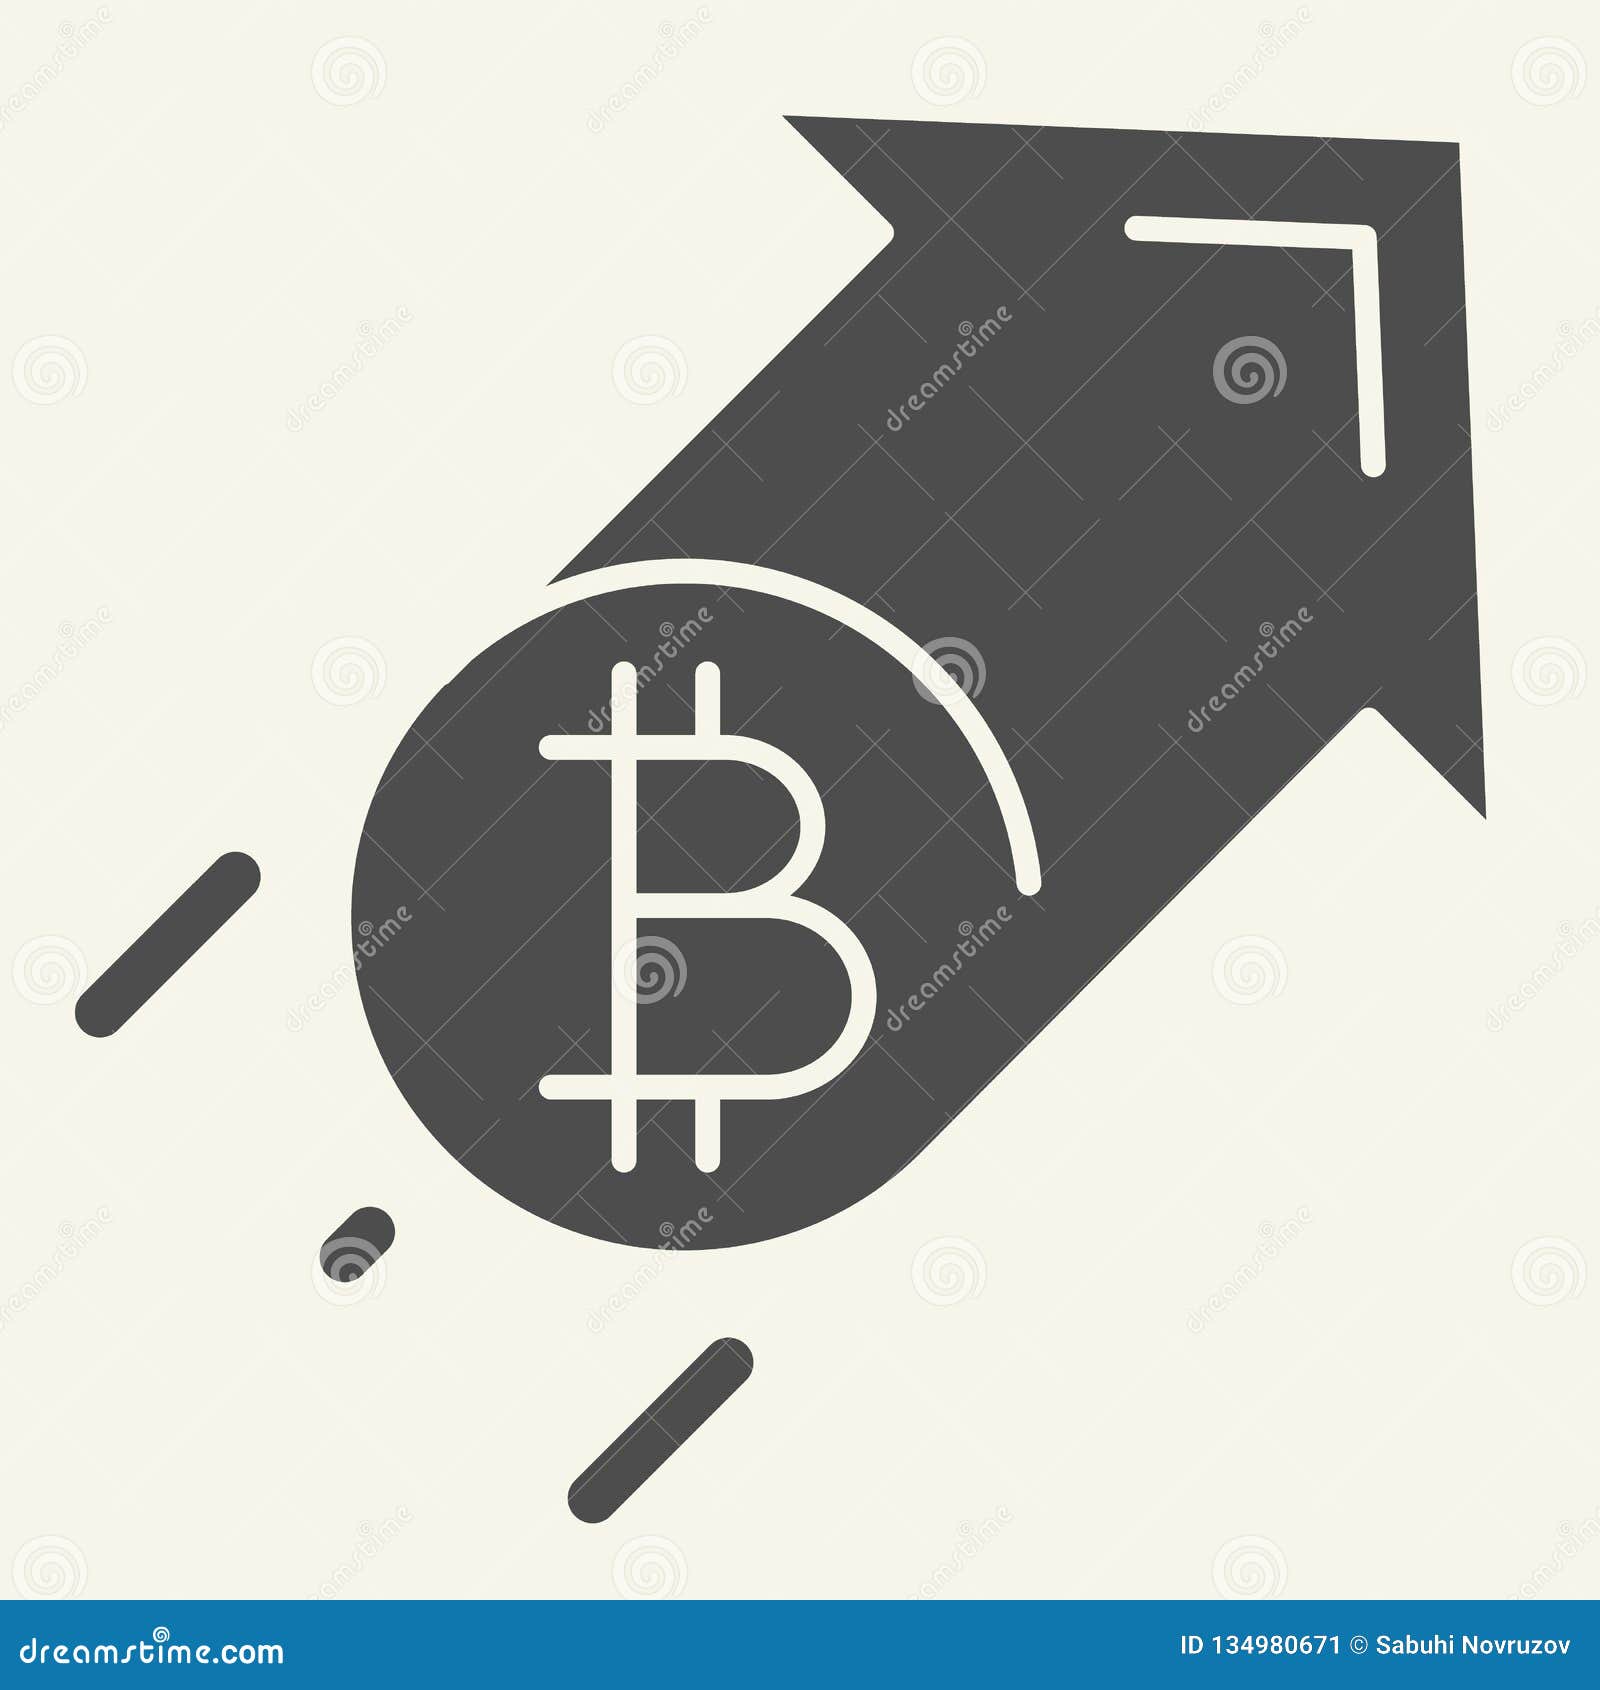 crypto coin increase